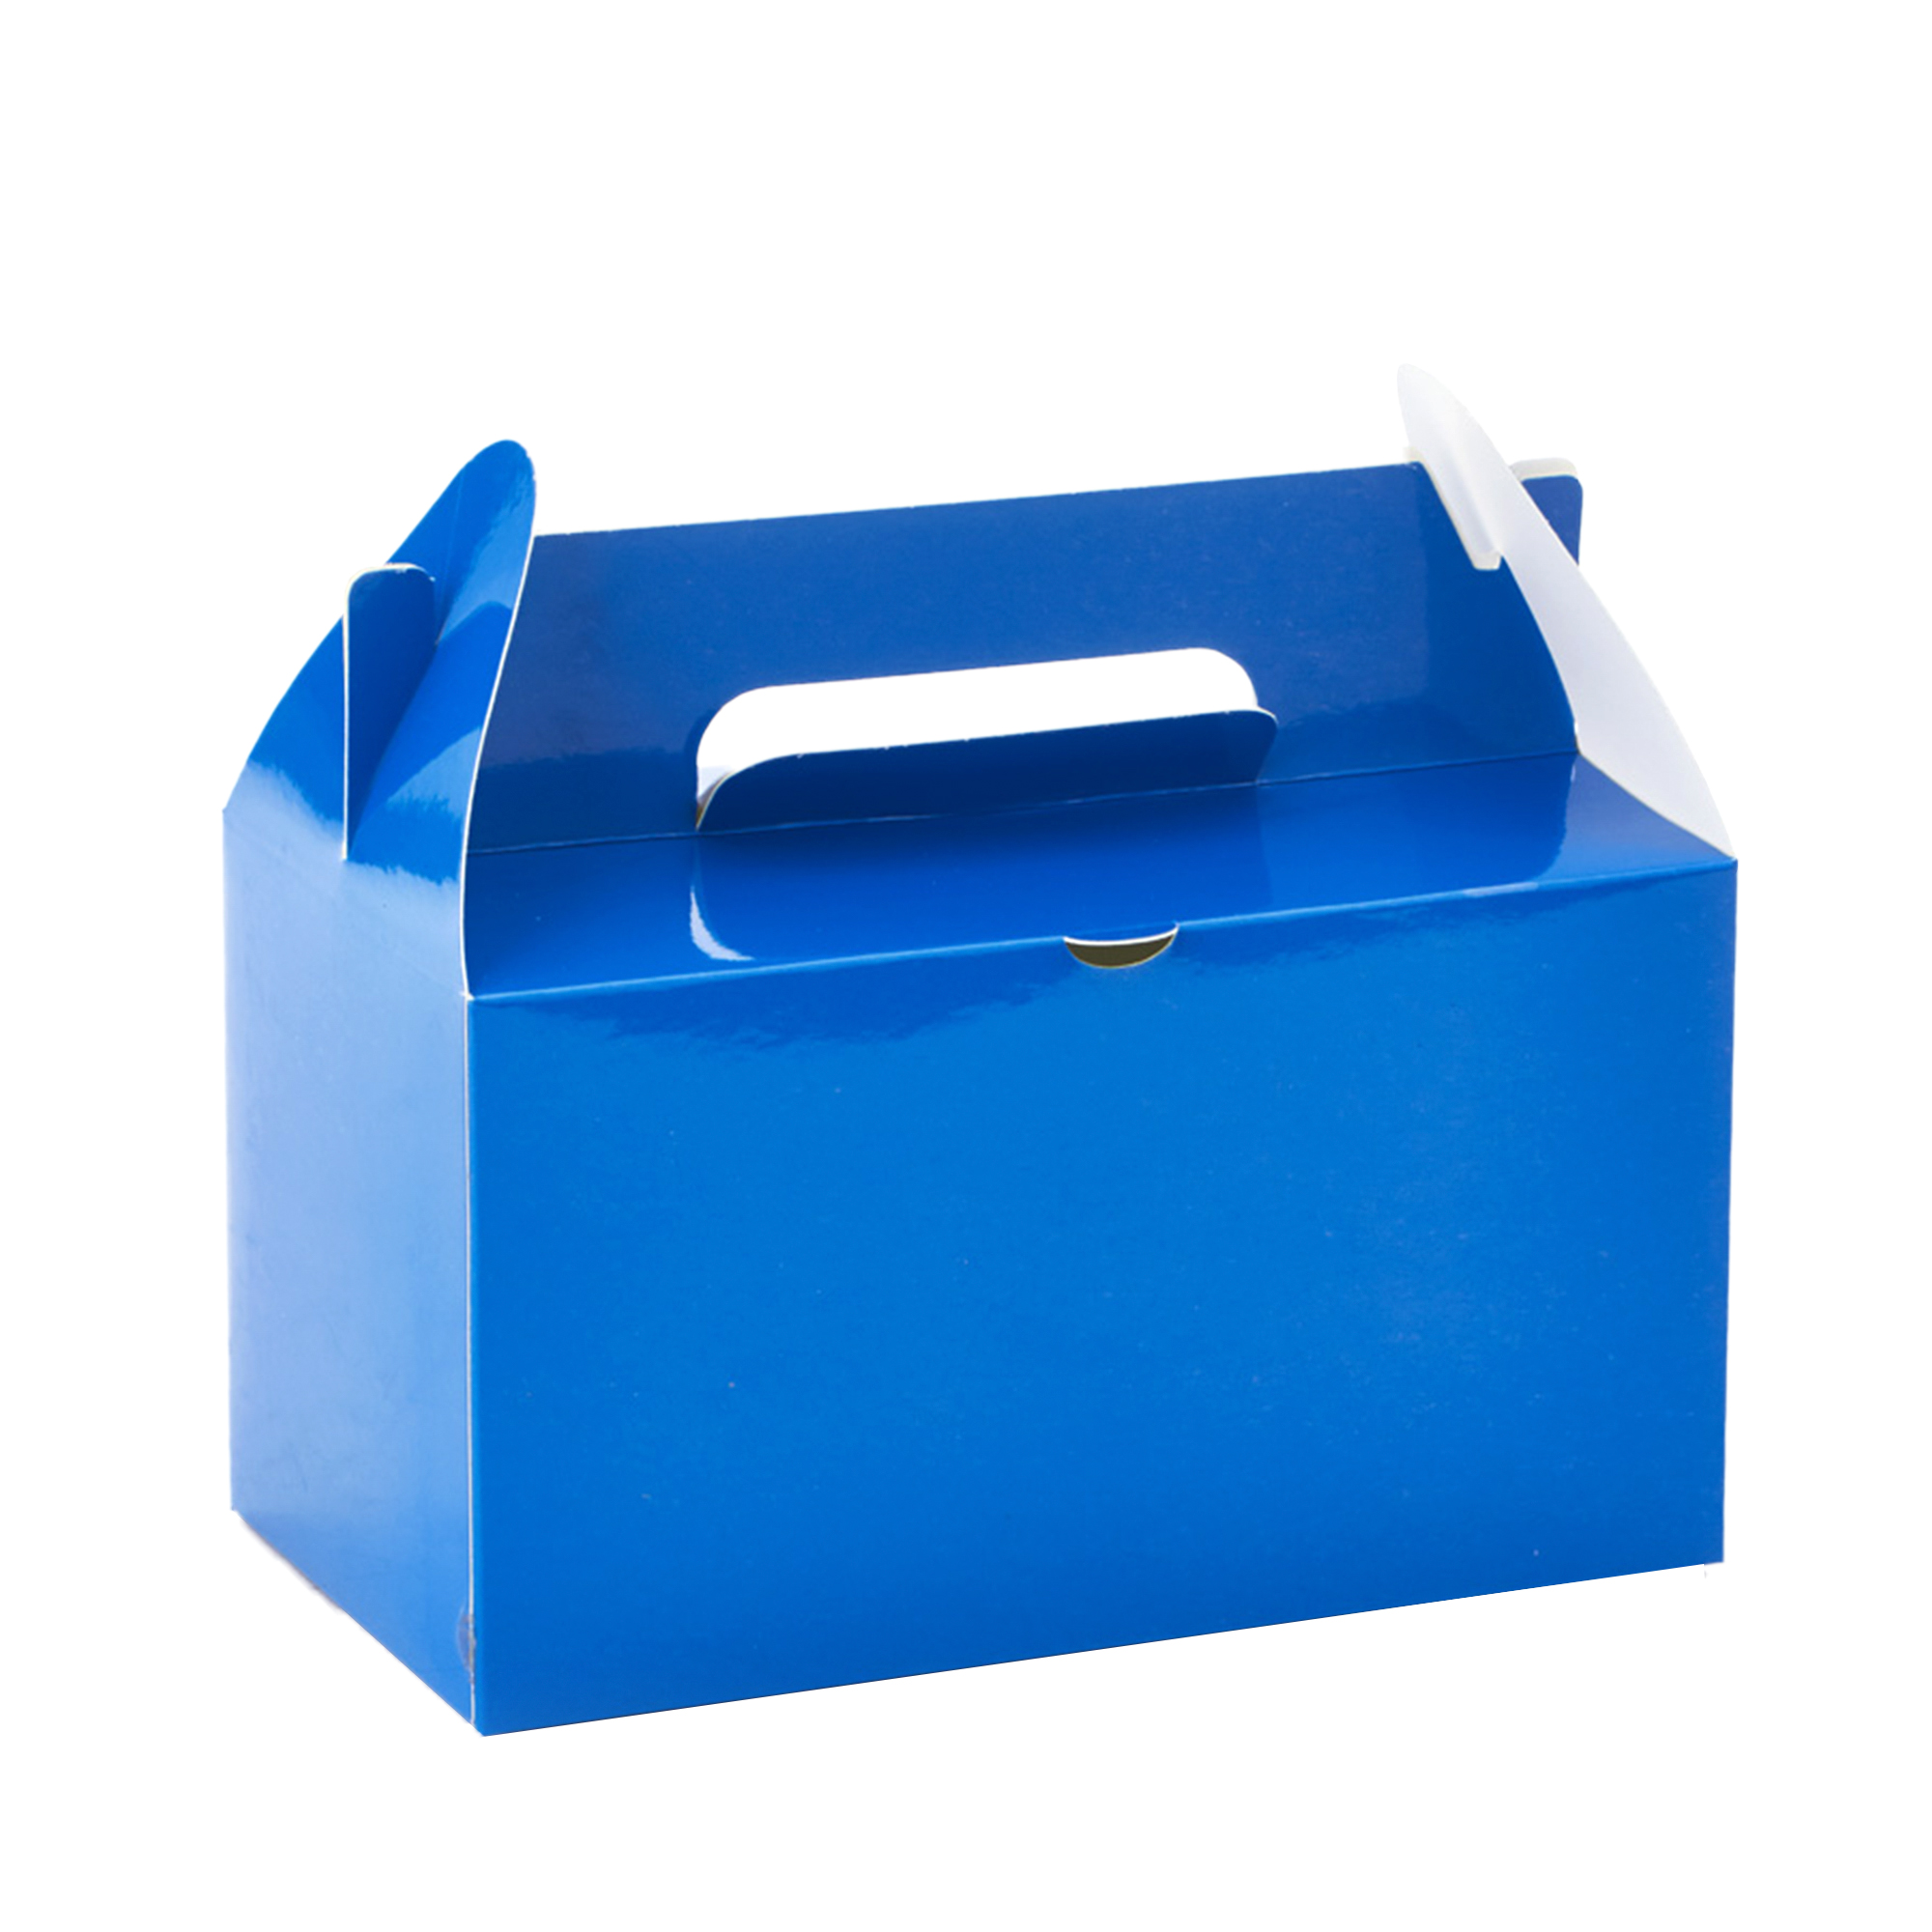 Takeout Box 12pcs/bag - Royal Blue